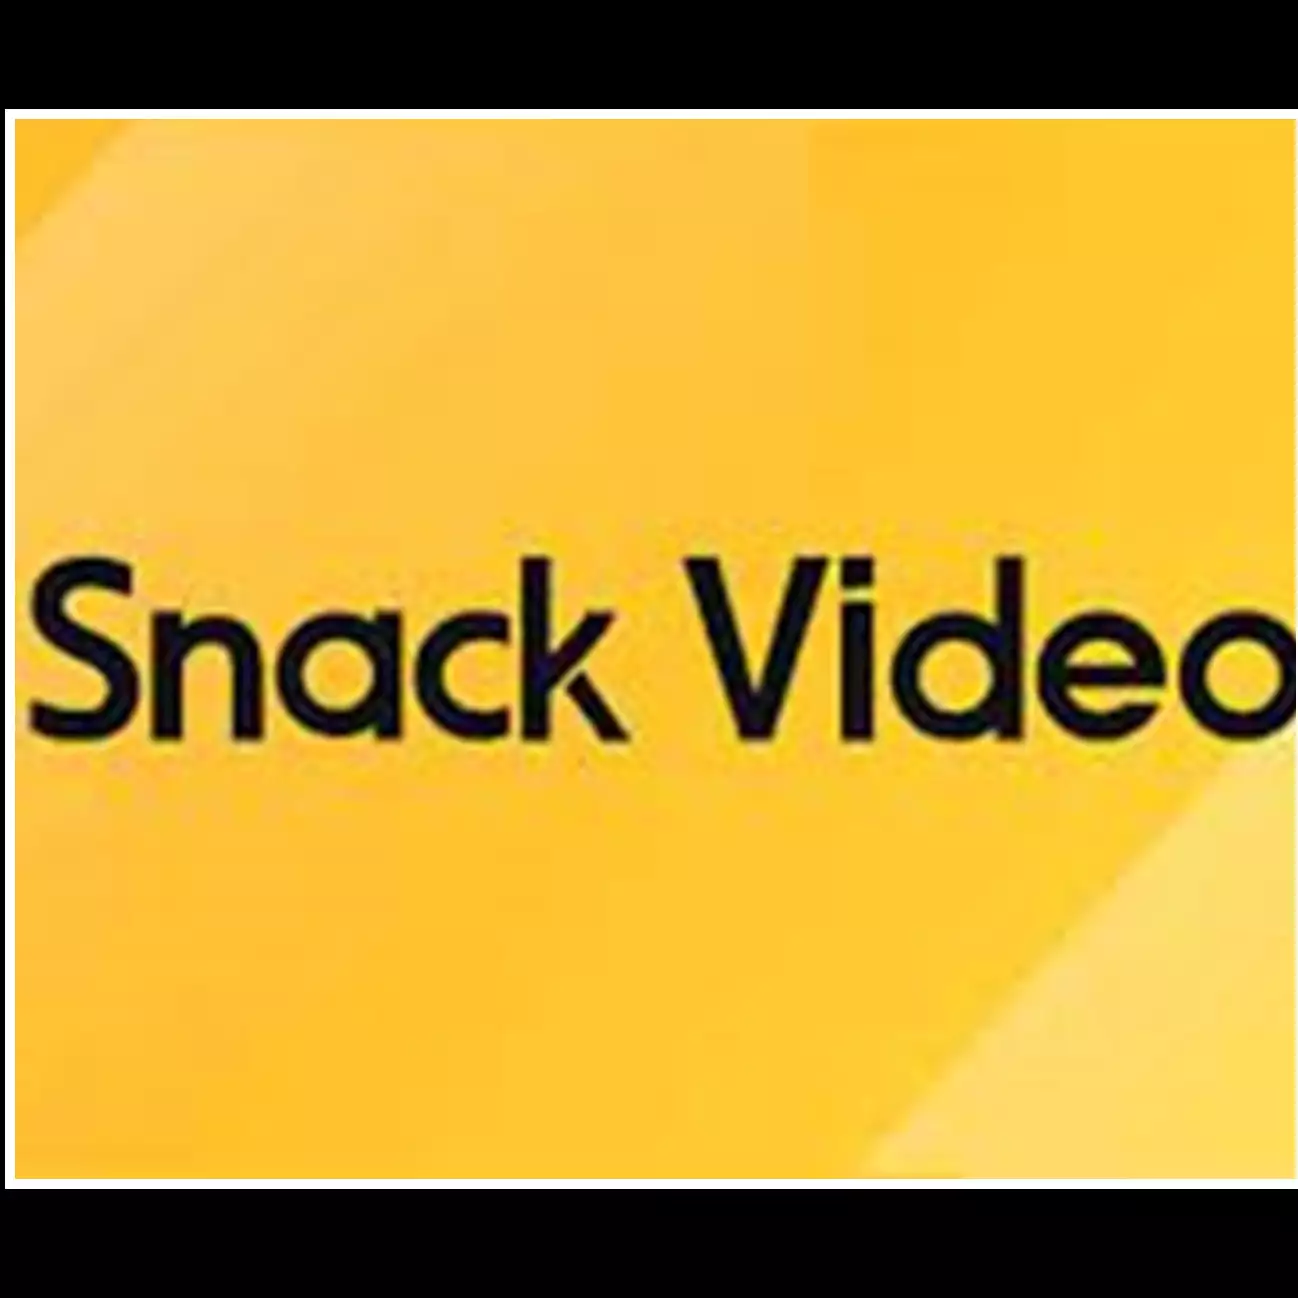 Syarat dan cara menghasilkan uang dari Snack Video, nggak ribet